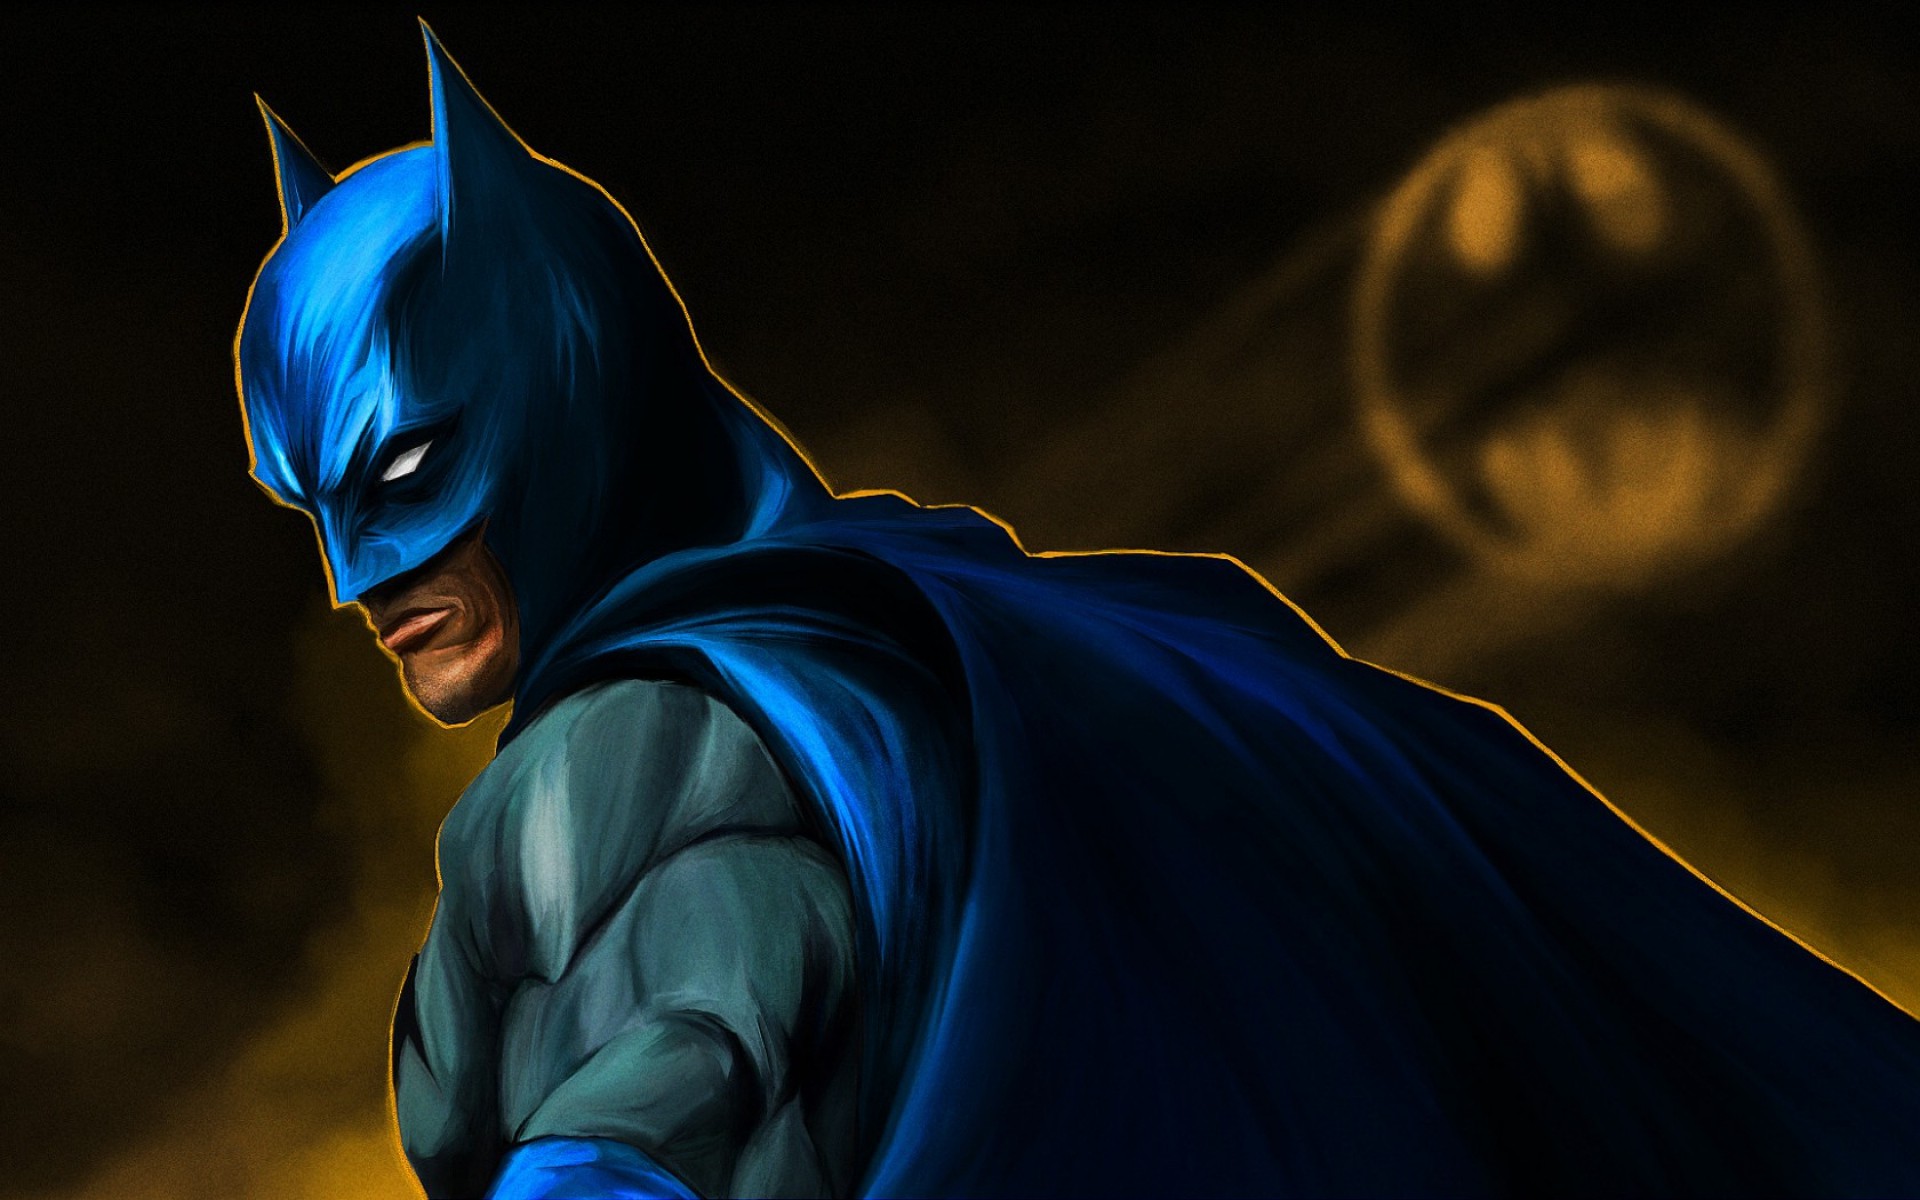 Batman, Comics, DC Comics, Superhero, Concept Art Wallpapers HD / Desktop  and Mobile Backgrounds